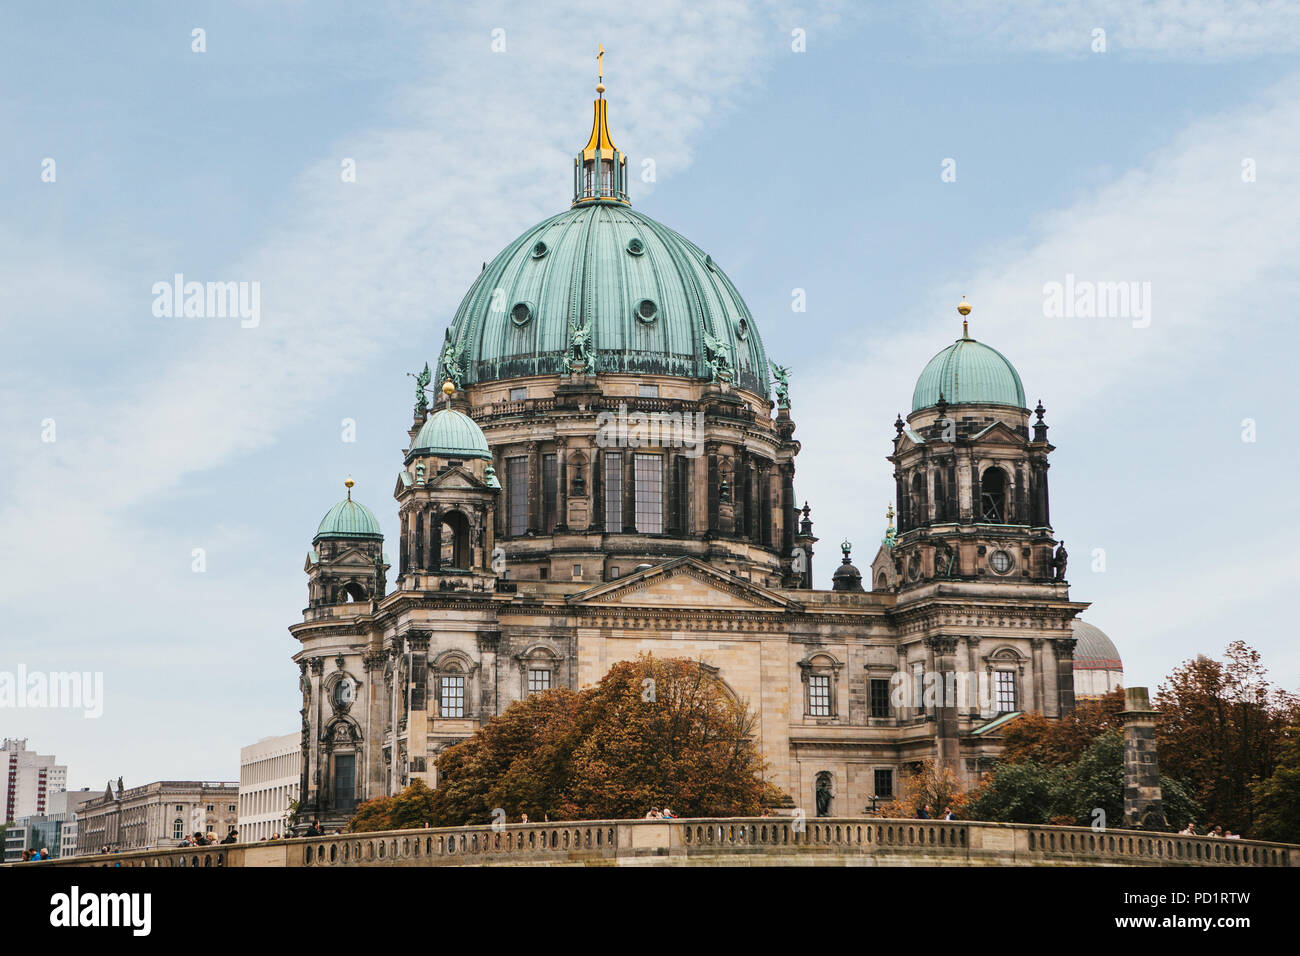 La Catedral de Berlín se llama Berliner Dom contra el cielo azul. Hermoso y antiguo edificio en el estilo del barroco con el neoclasicismo y Cruz y esculturas. Berlín, Alemania Foto de stock